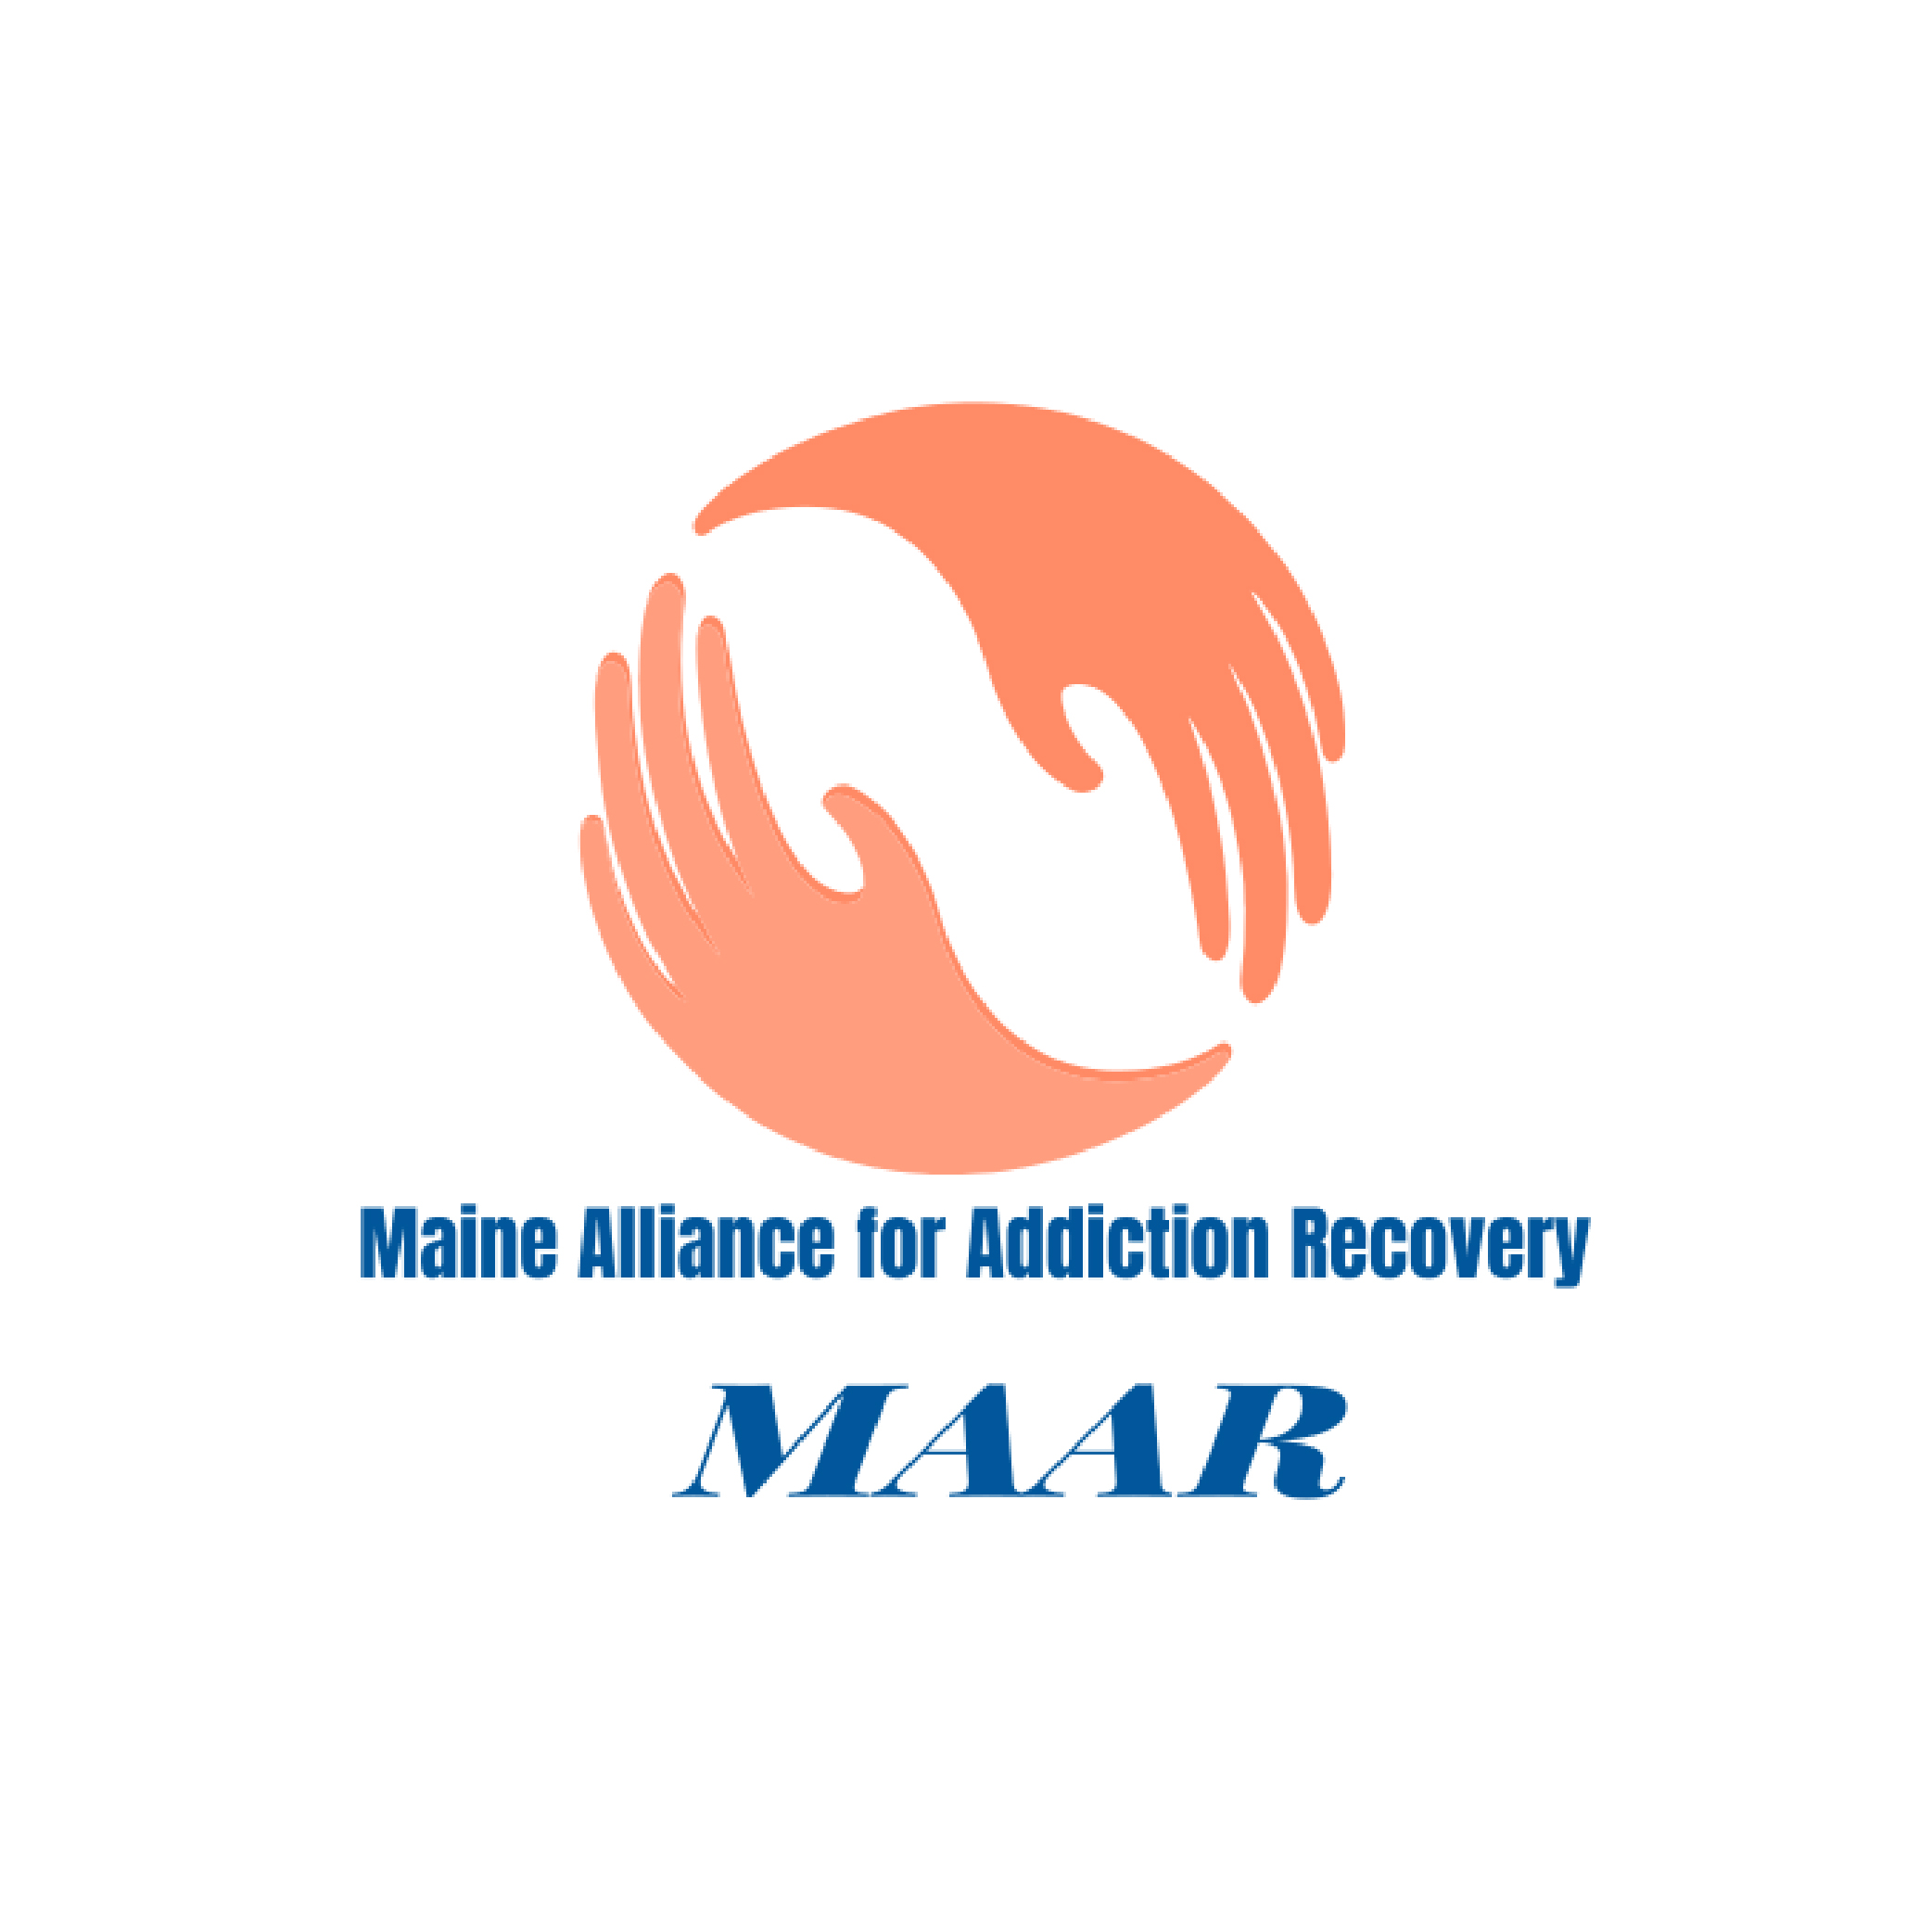 Logotipo principal de la Alianza para la Recuperación de Adicciones